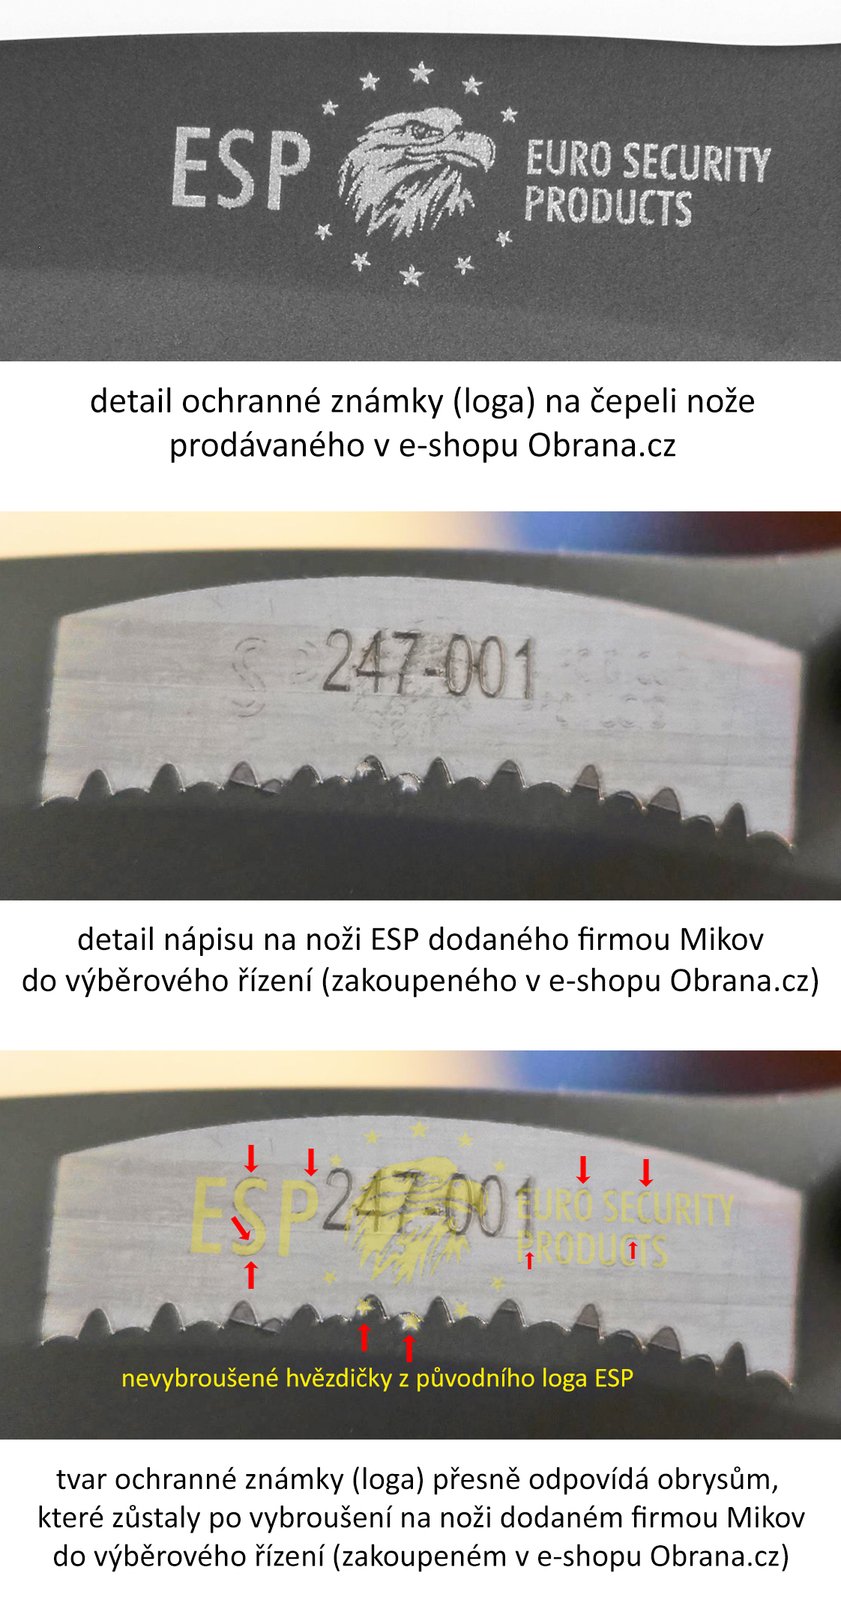 Detail na loga na noži. Na druhé a třetí fotce jsou provedené úpravy, na třetí jsou vidět zbytky špatně vybroušeného loga ESP.